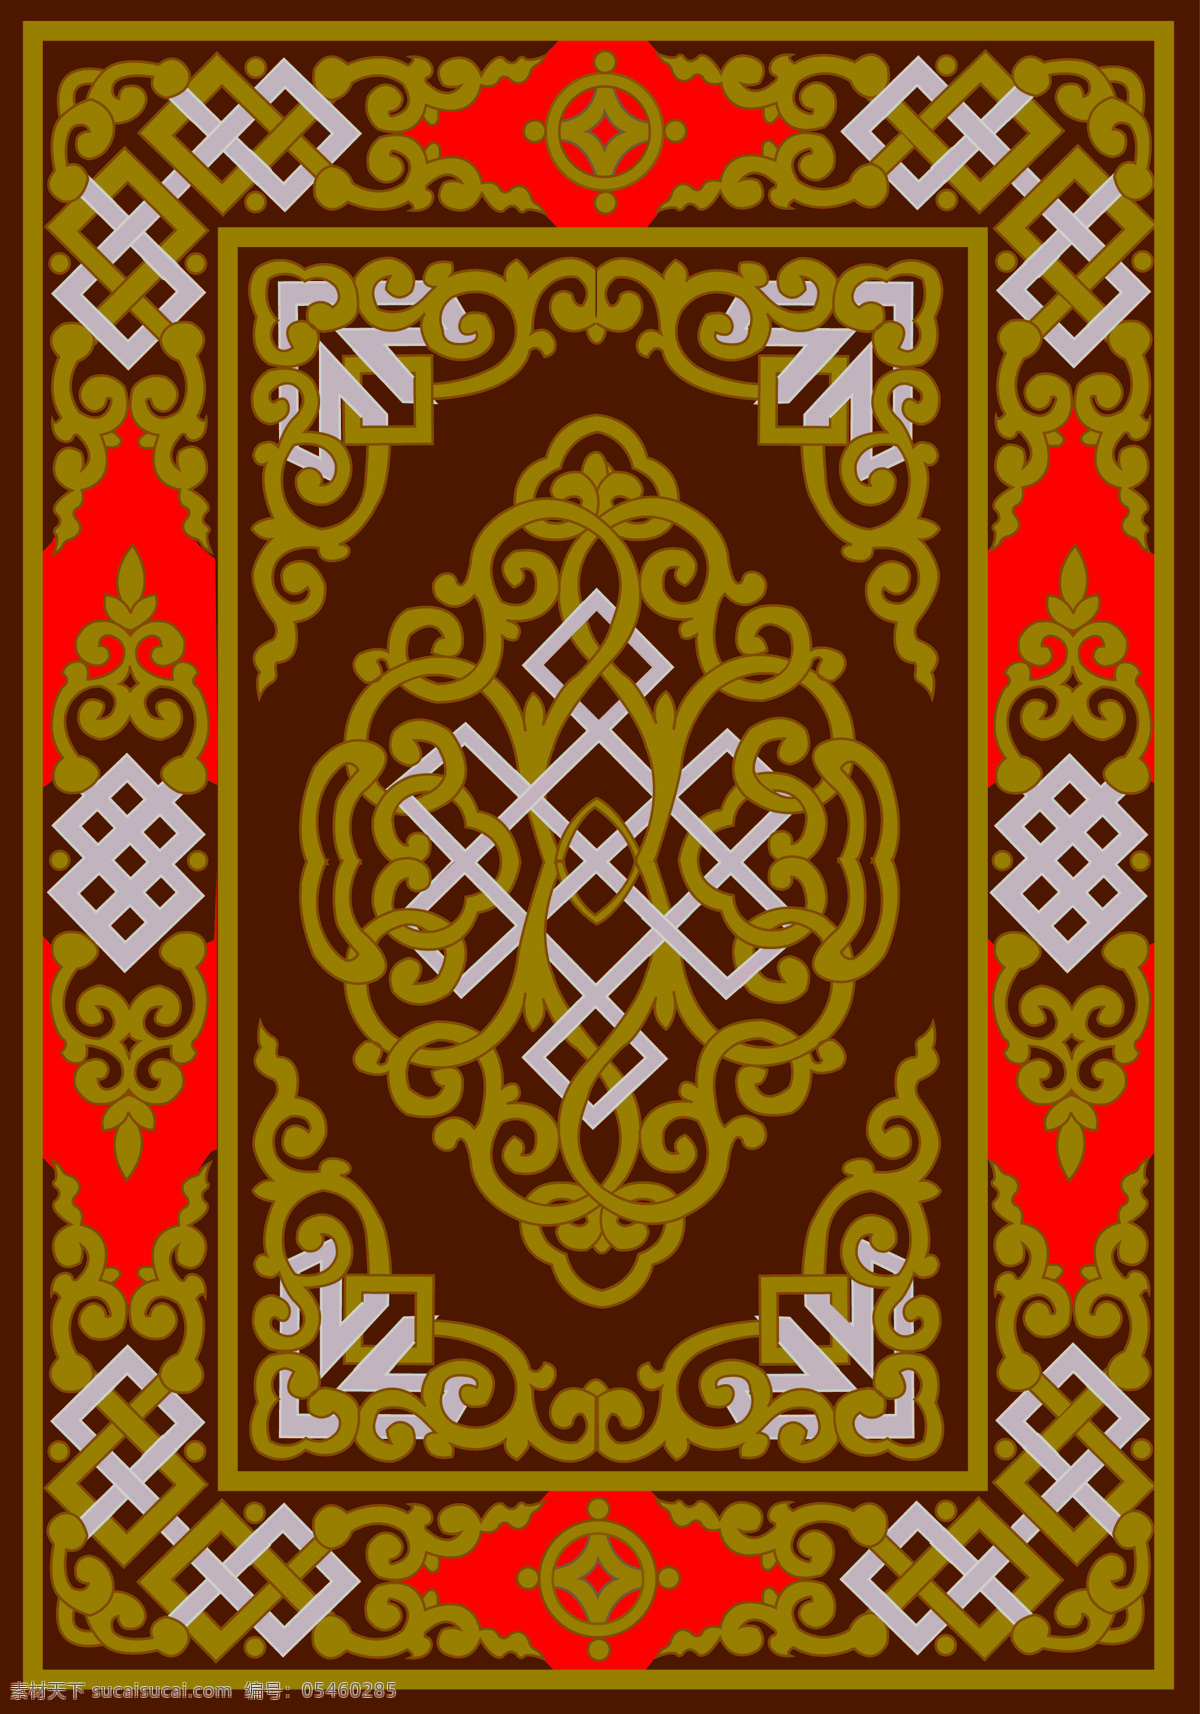 蒙古族图案 蒙古族 图案 图形 蒙古族纹样 蒙古族装饰 文化艺术 传统文化